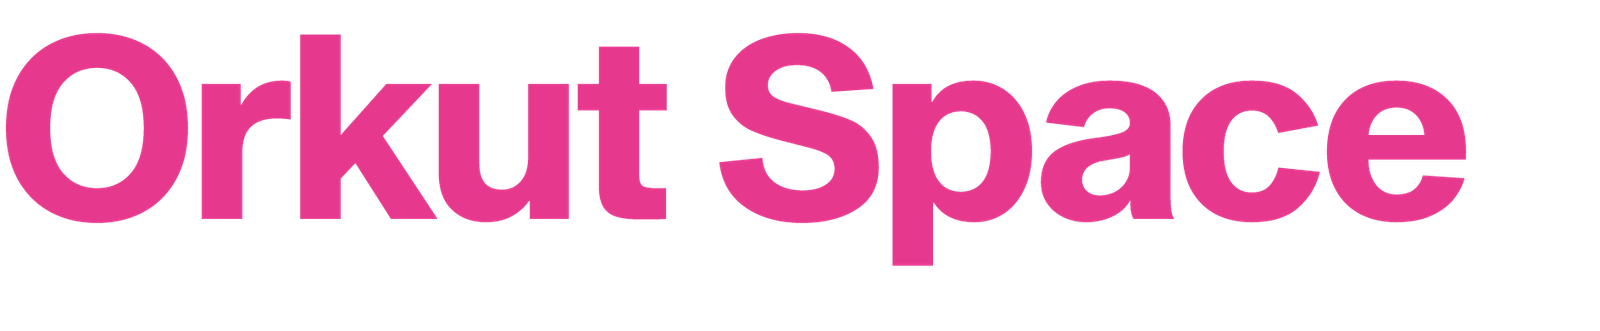 Orkut Space Logo